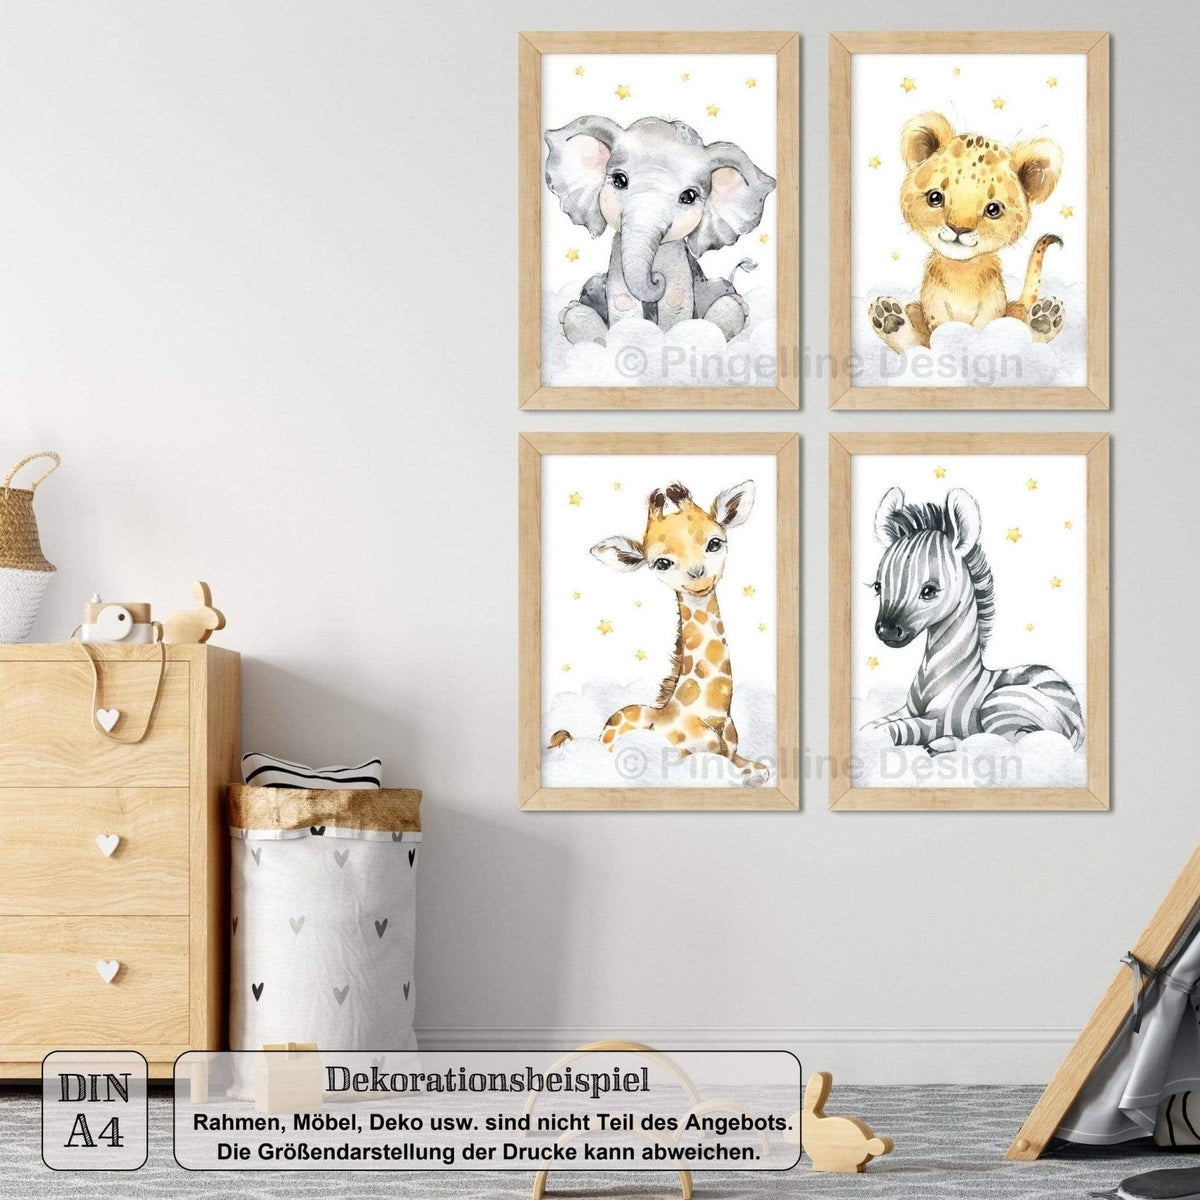 Safari - Set Design A3 Bilder A4 4er / Kinderzimmer Pingelline Tiere